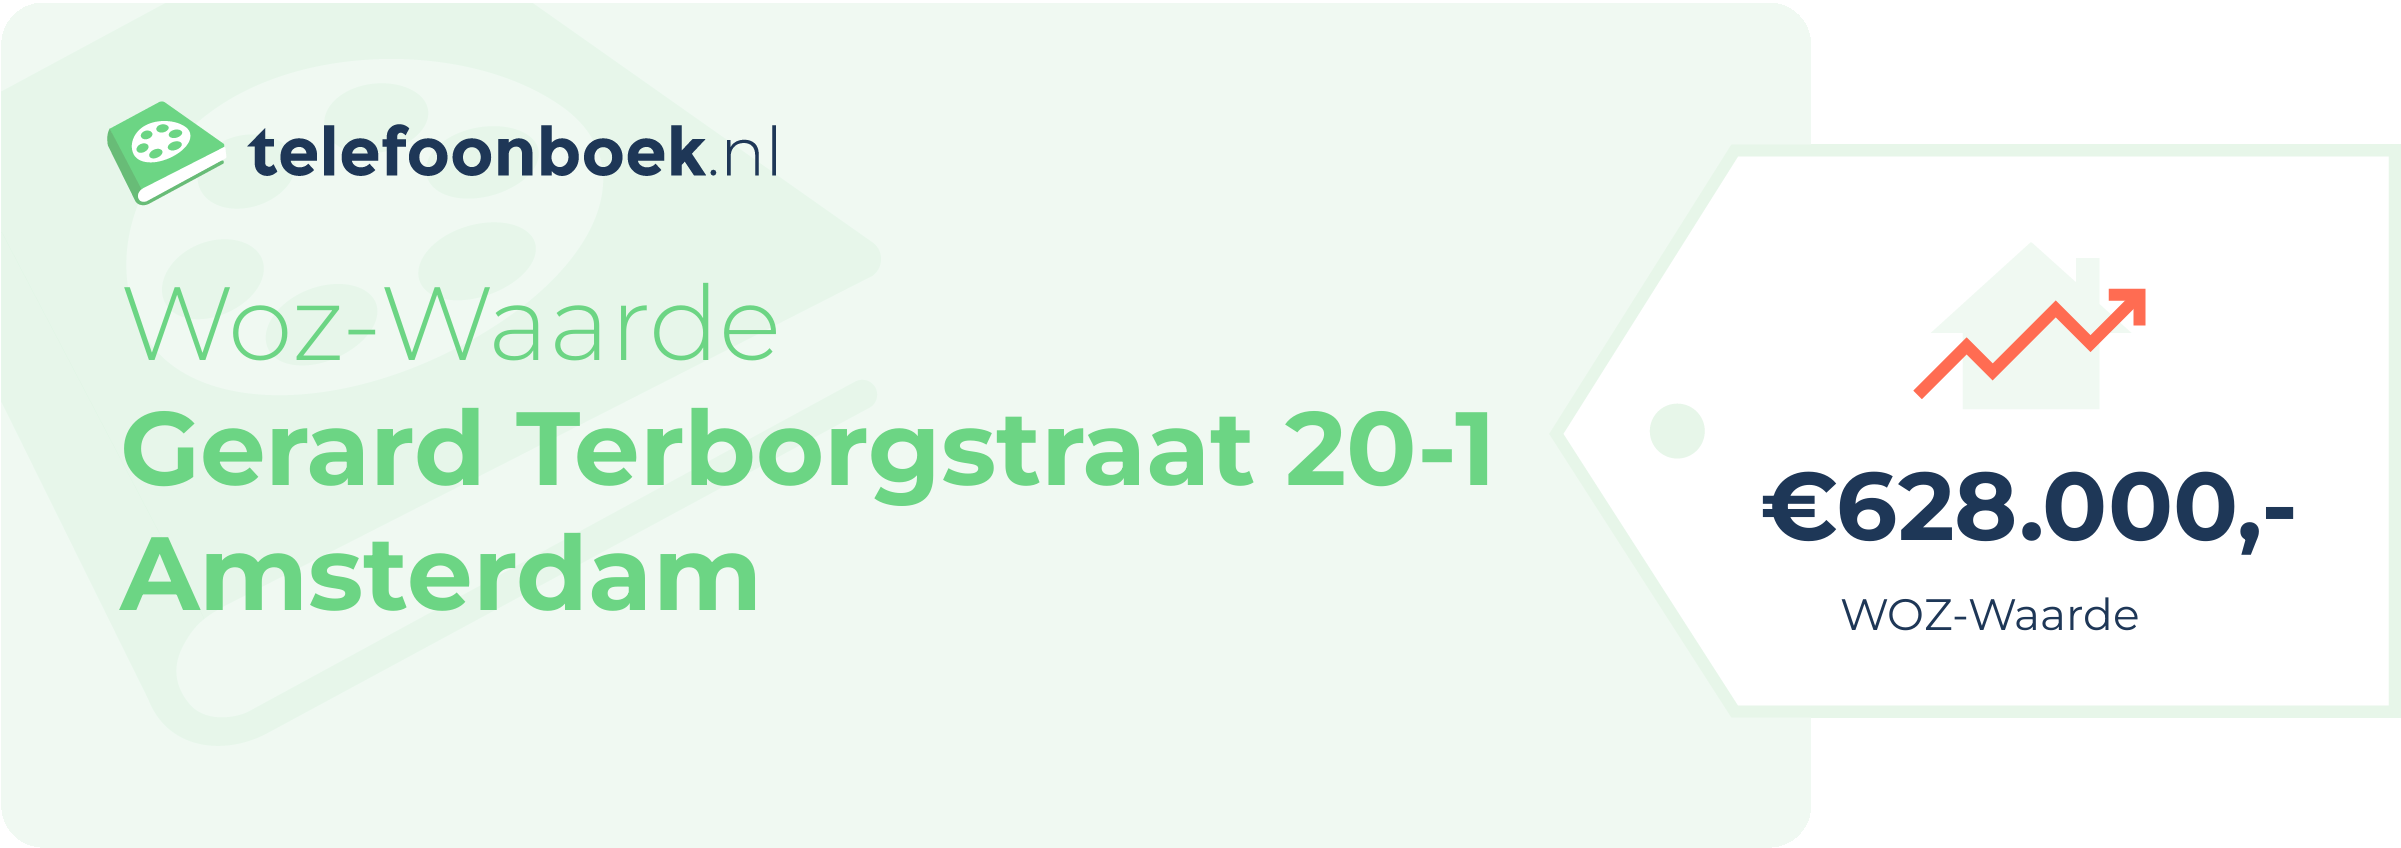 WOZ-waarde Gerard Terborgstraat 20-1 Amsterdam